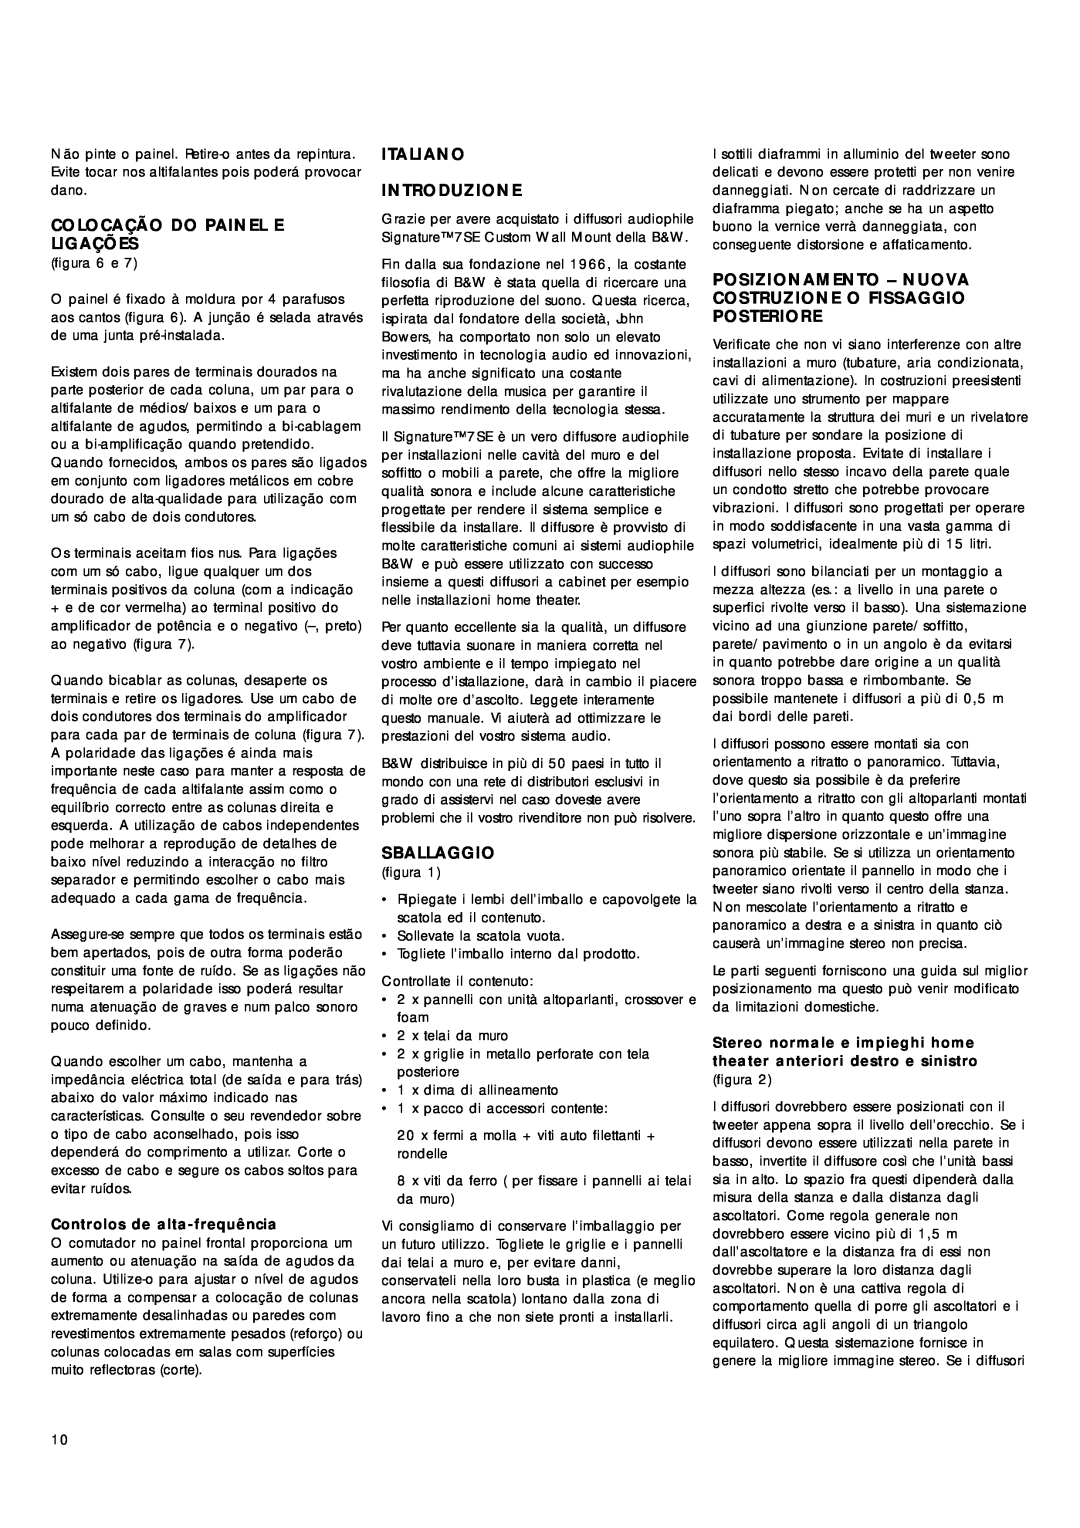 Bowers & Wilkins Signature 7SE owner manual Colocação Do Painel E Ligações, Italiano Introduzione, Sballaggio 